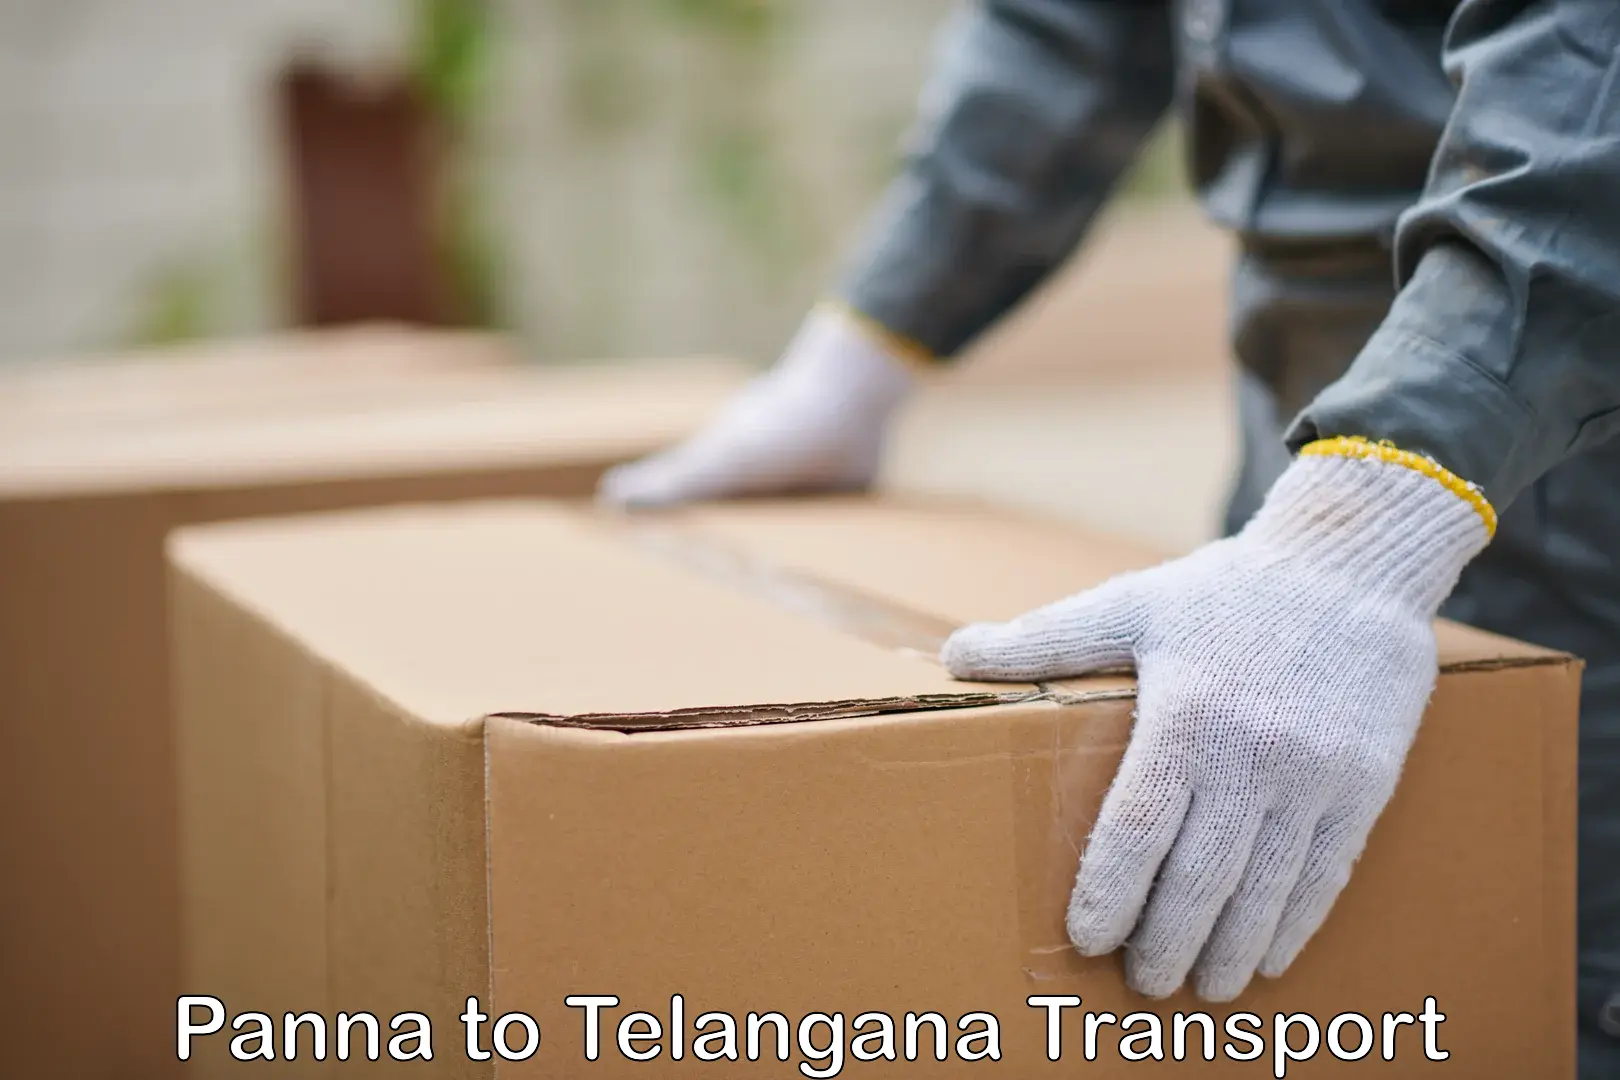 Shipping partner Panna to Telangana